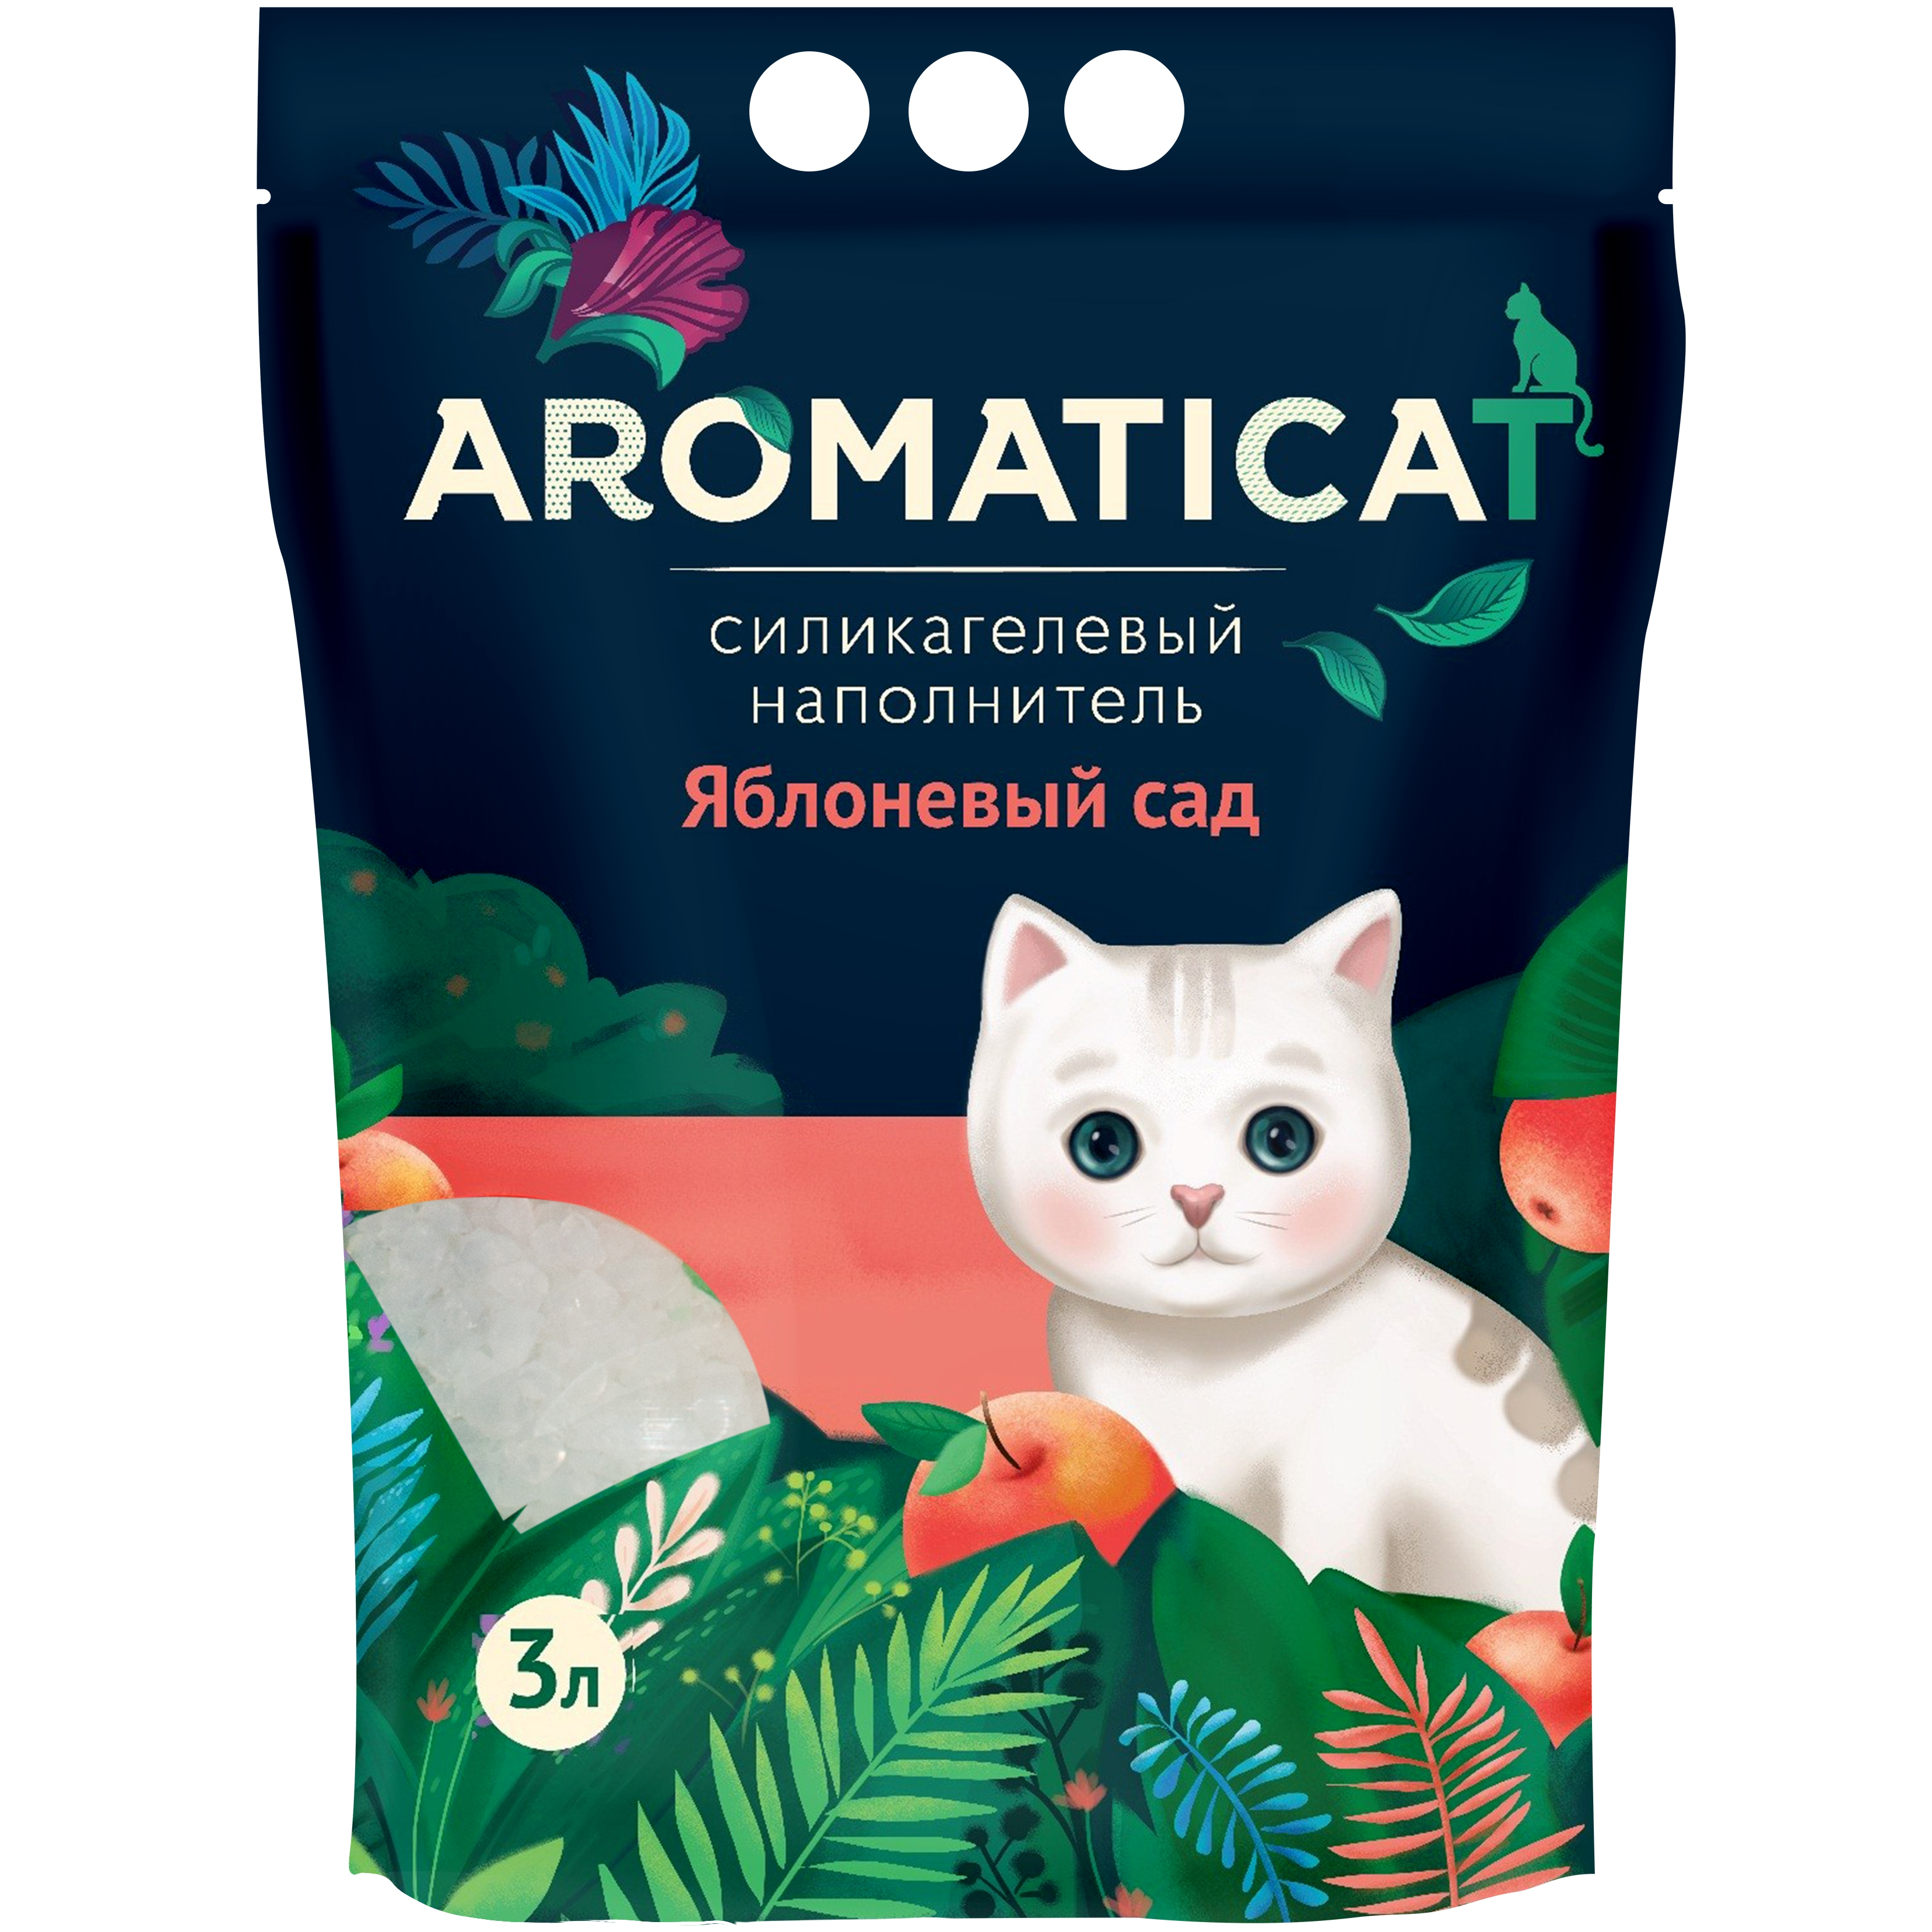 Наполнитель AromatiCat для кошки